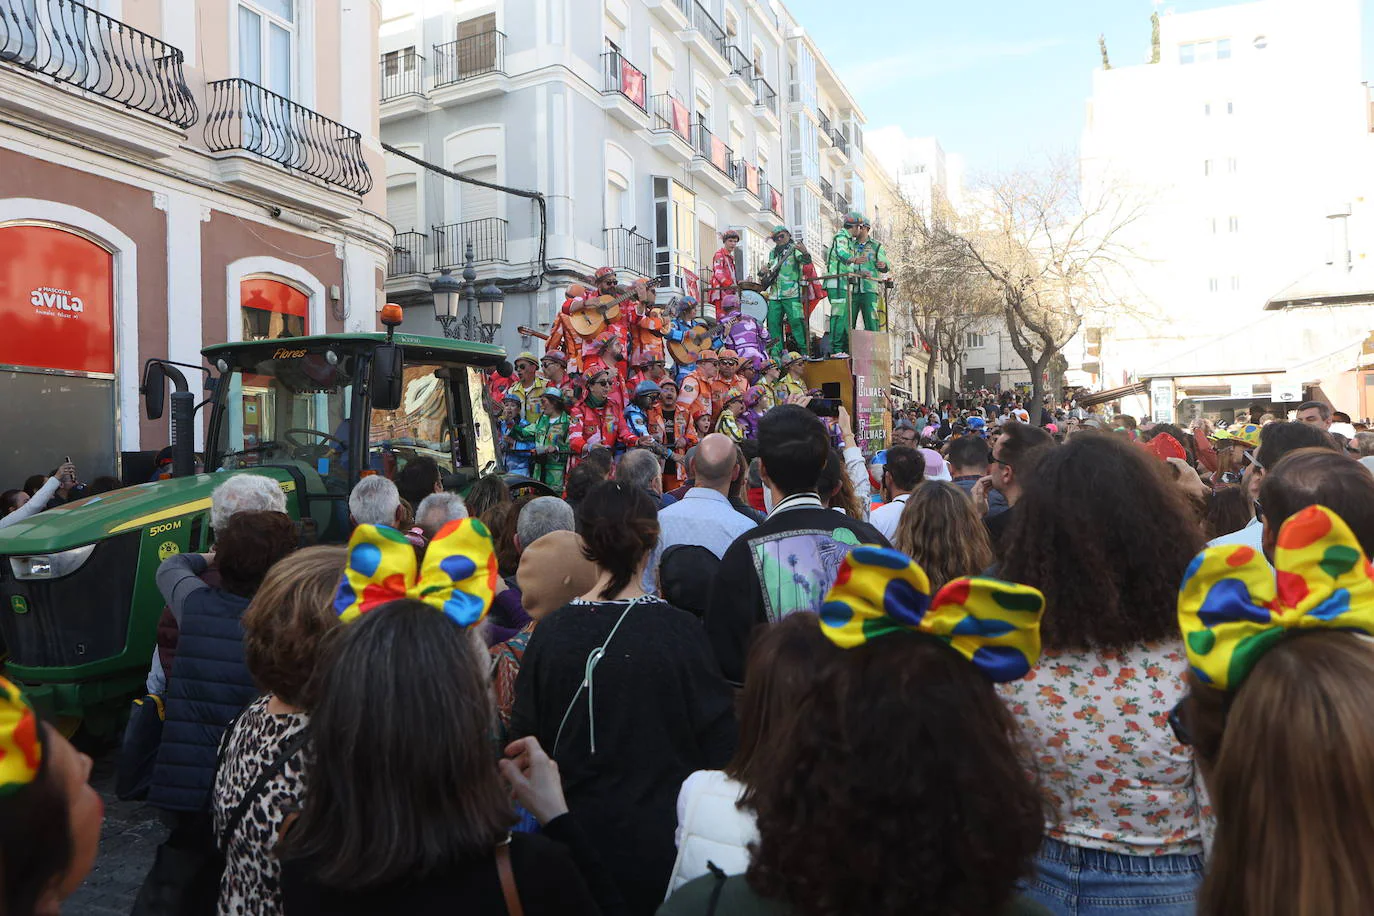 Fotos: Cantera, coros y gran ambiente en un soleado Domingo de Piñata